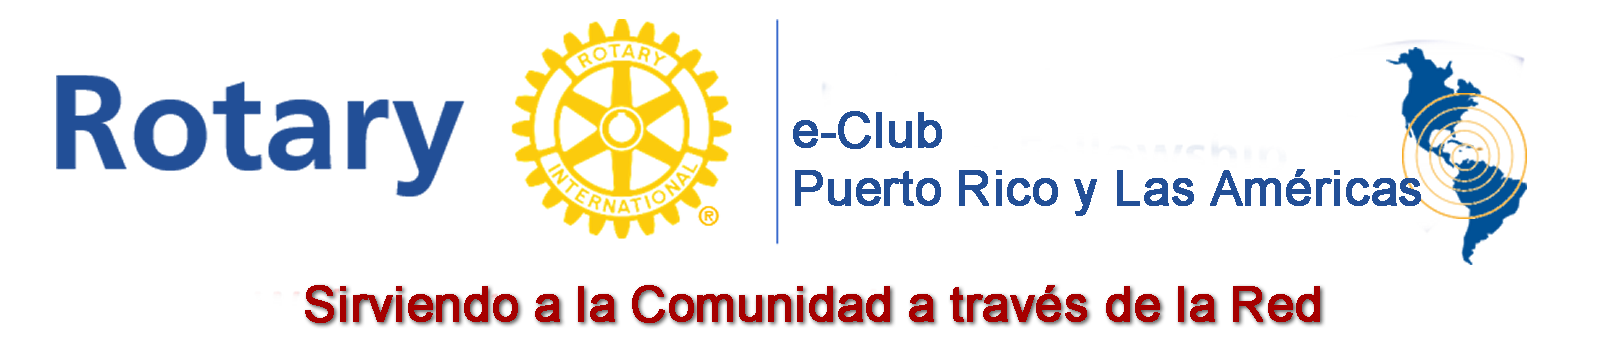 Stories Rotary E Club Puerto Rico y Las Americas 